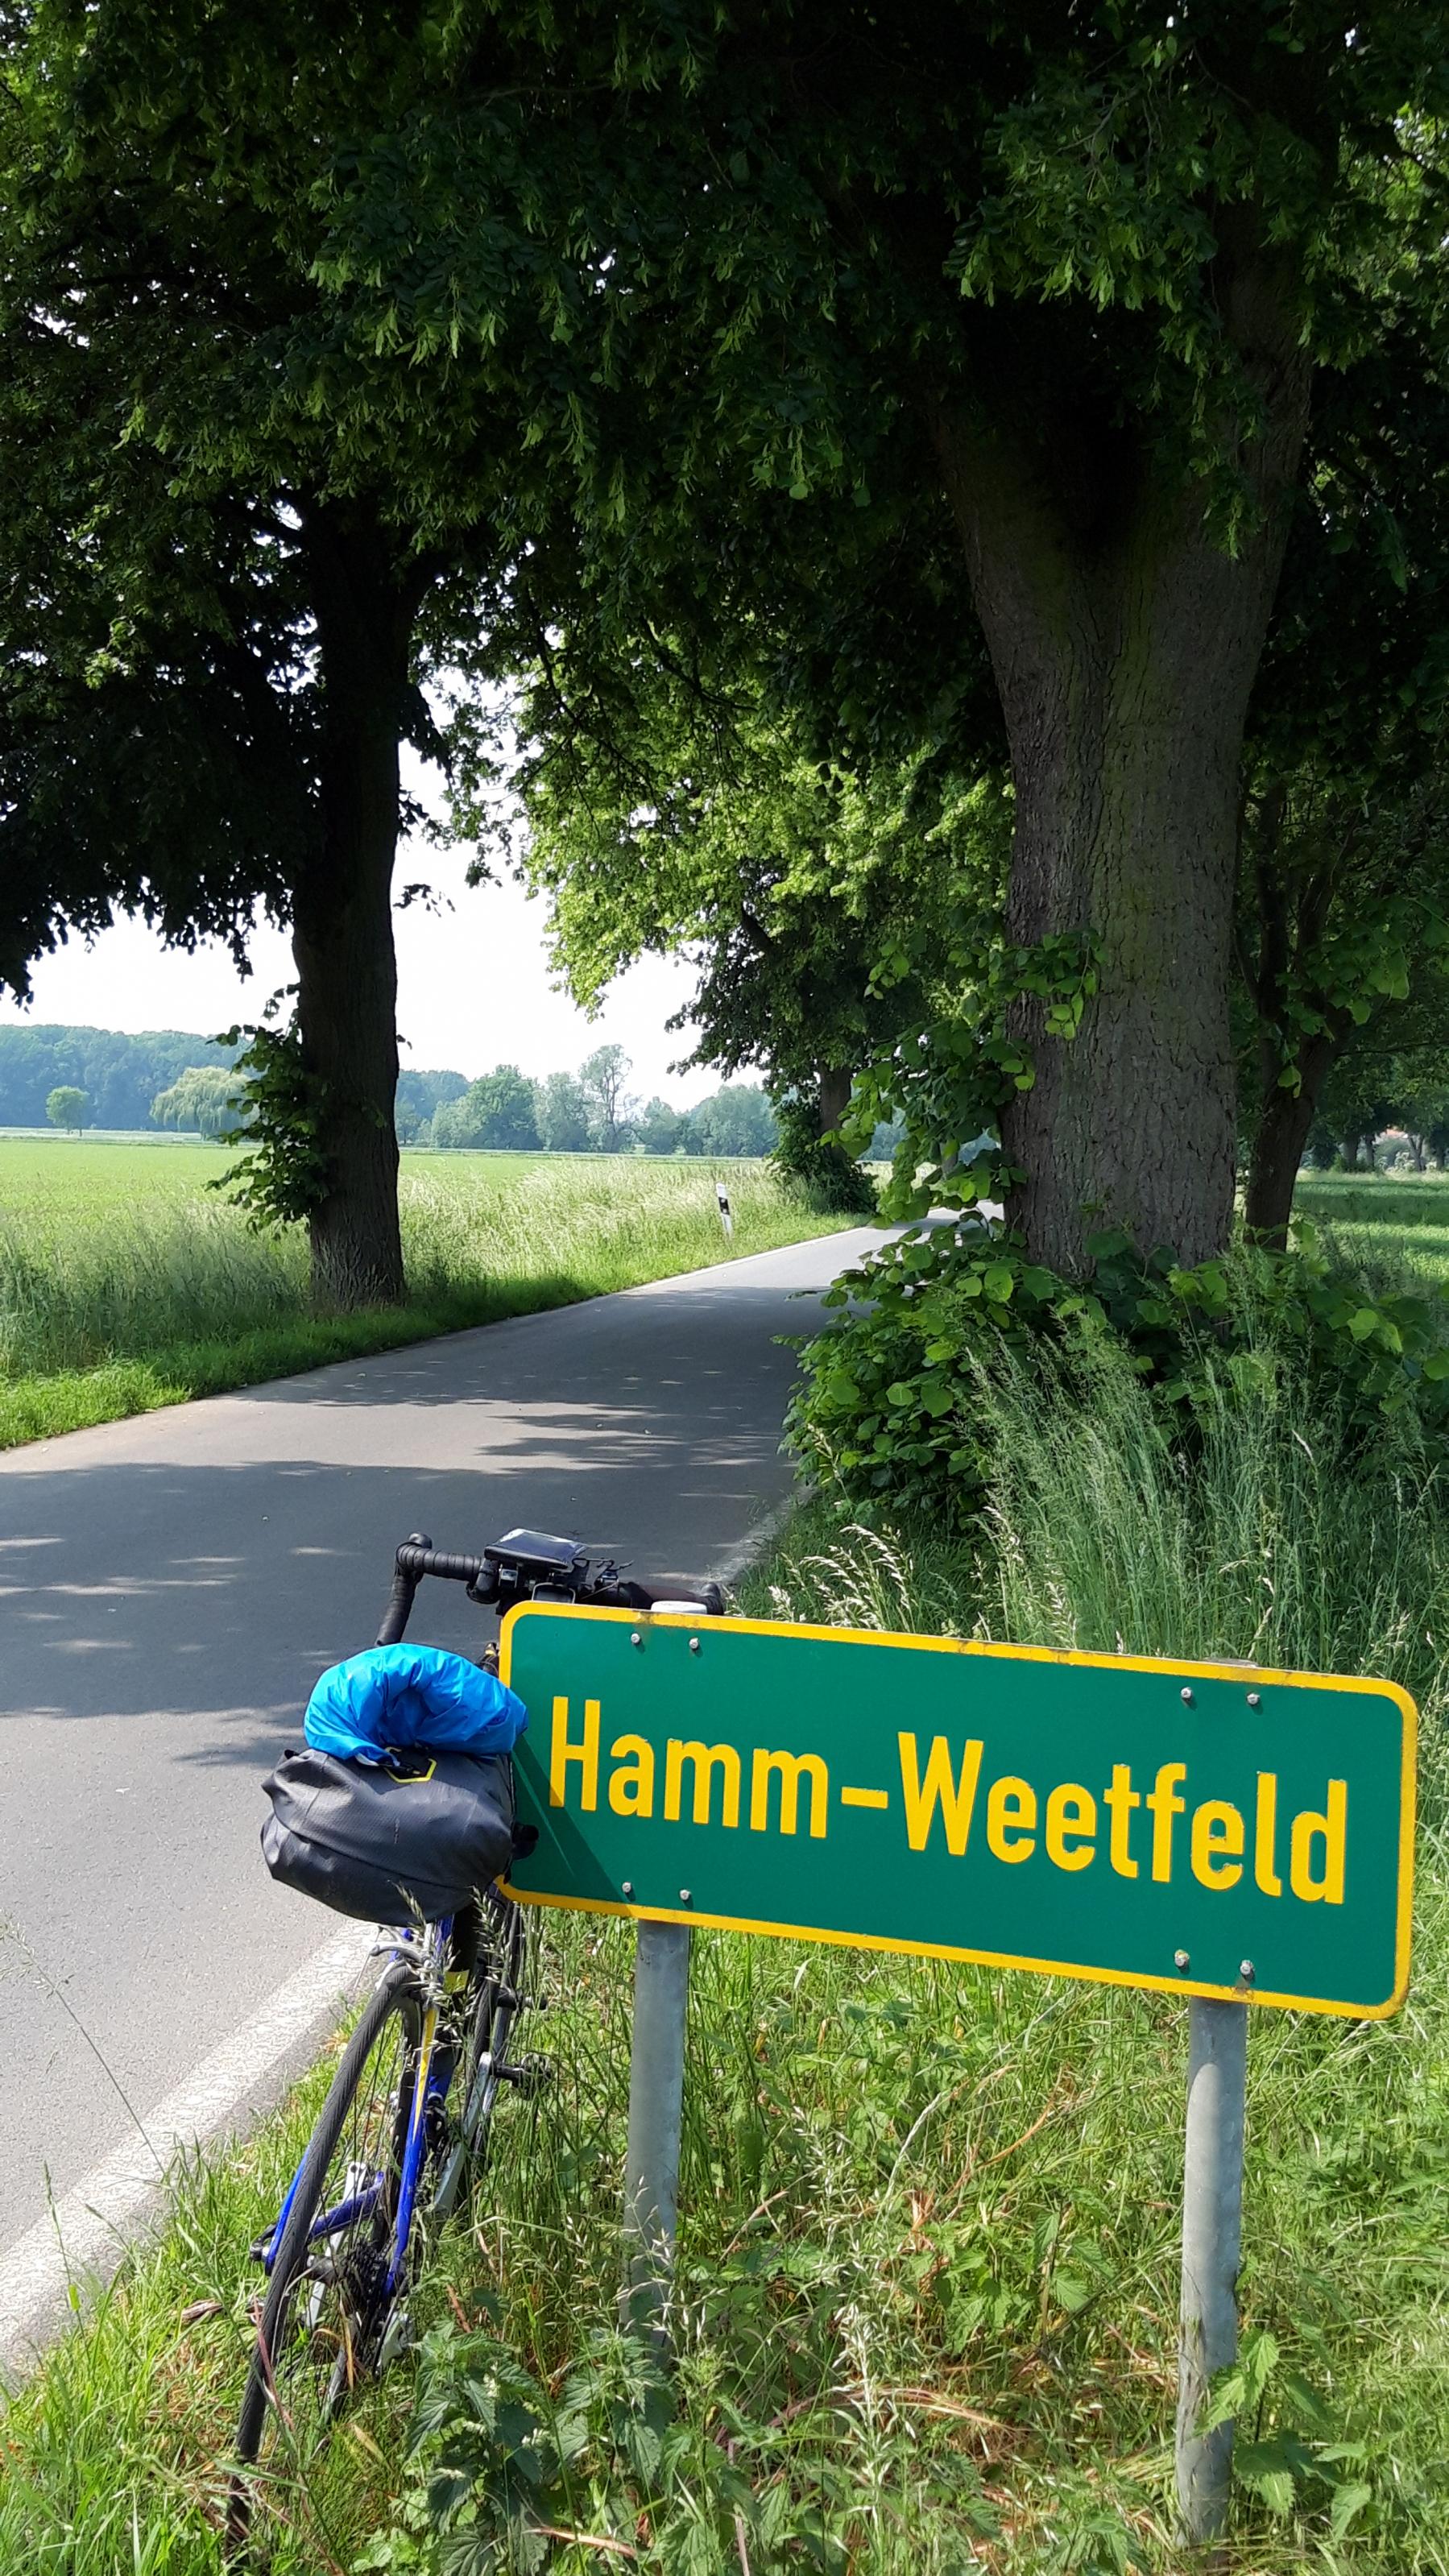 Das Vehikel des RadelndenReporters am Ortsschild Hamm-Weetfeld im äußersten Osten des Ruhrgebiets.